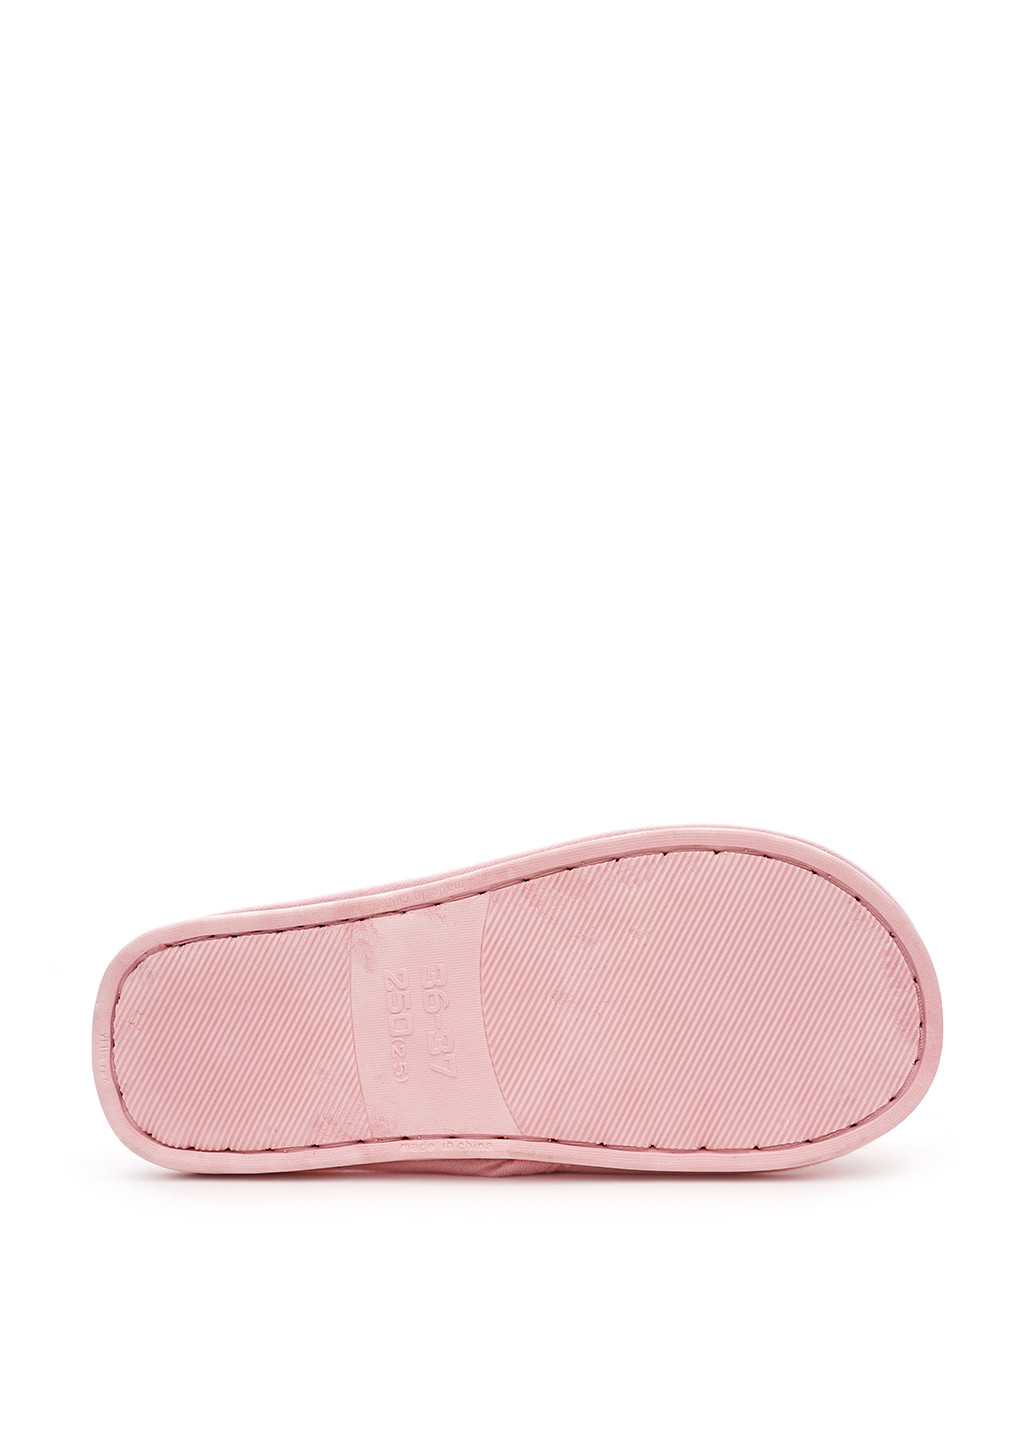 Розовые тапочки Slippers с аппликацией, с вышивкой